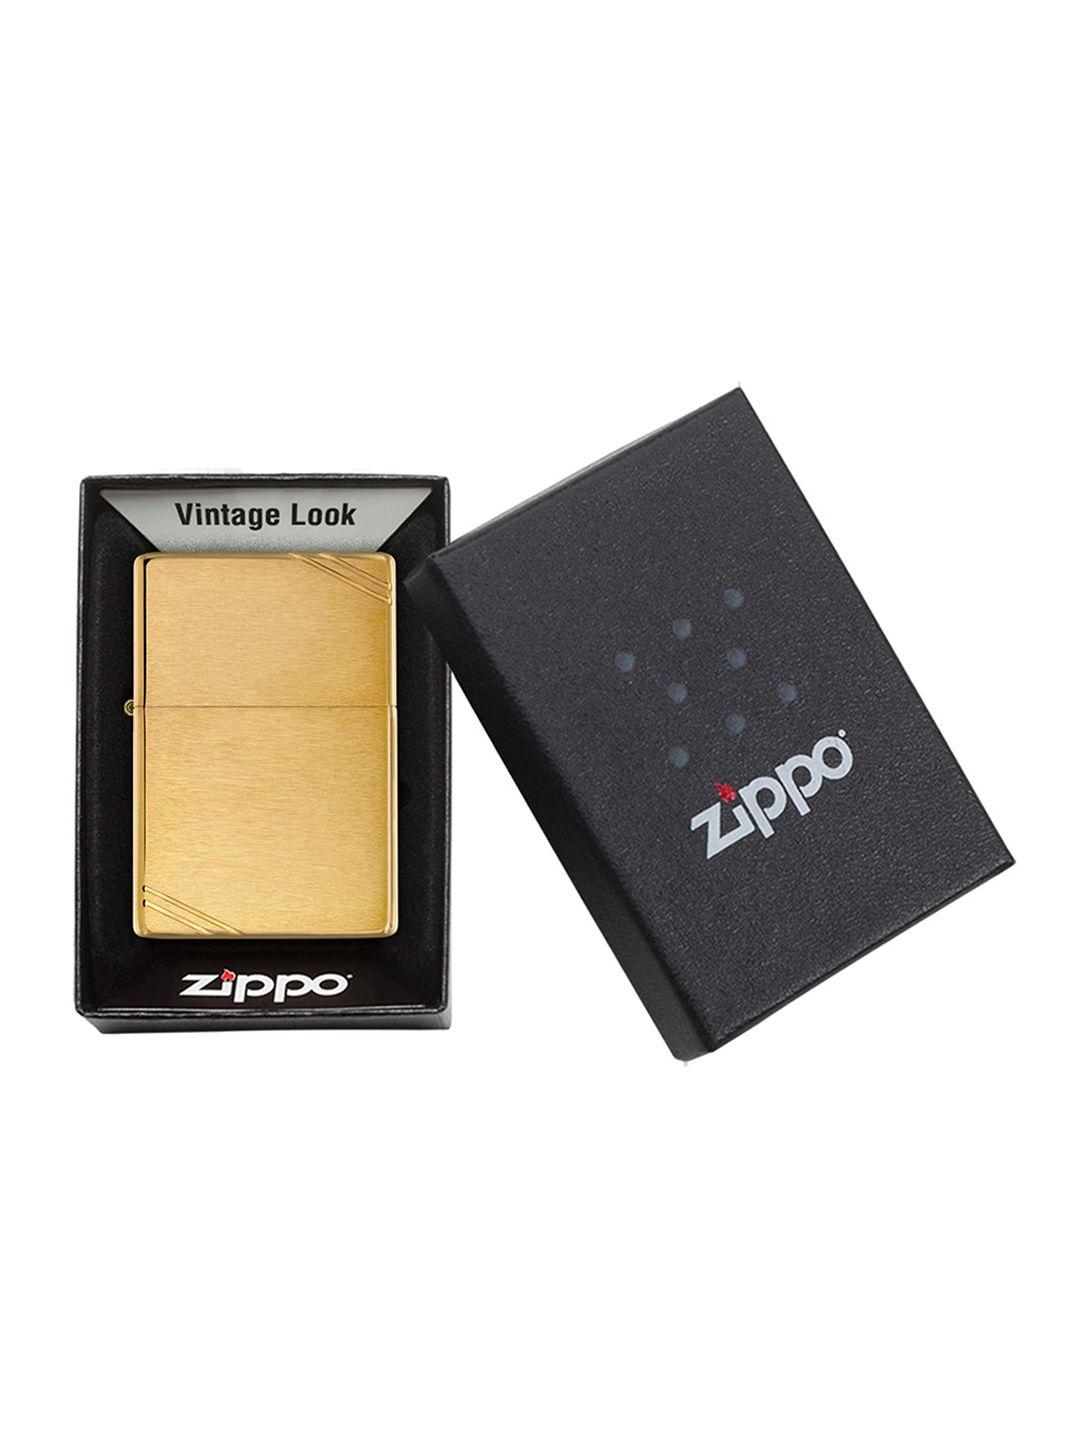 zippo unisex gold-toned vintage brushed pocket lighter